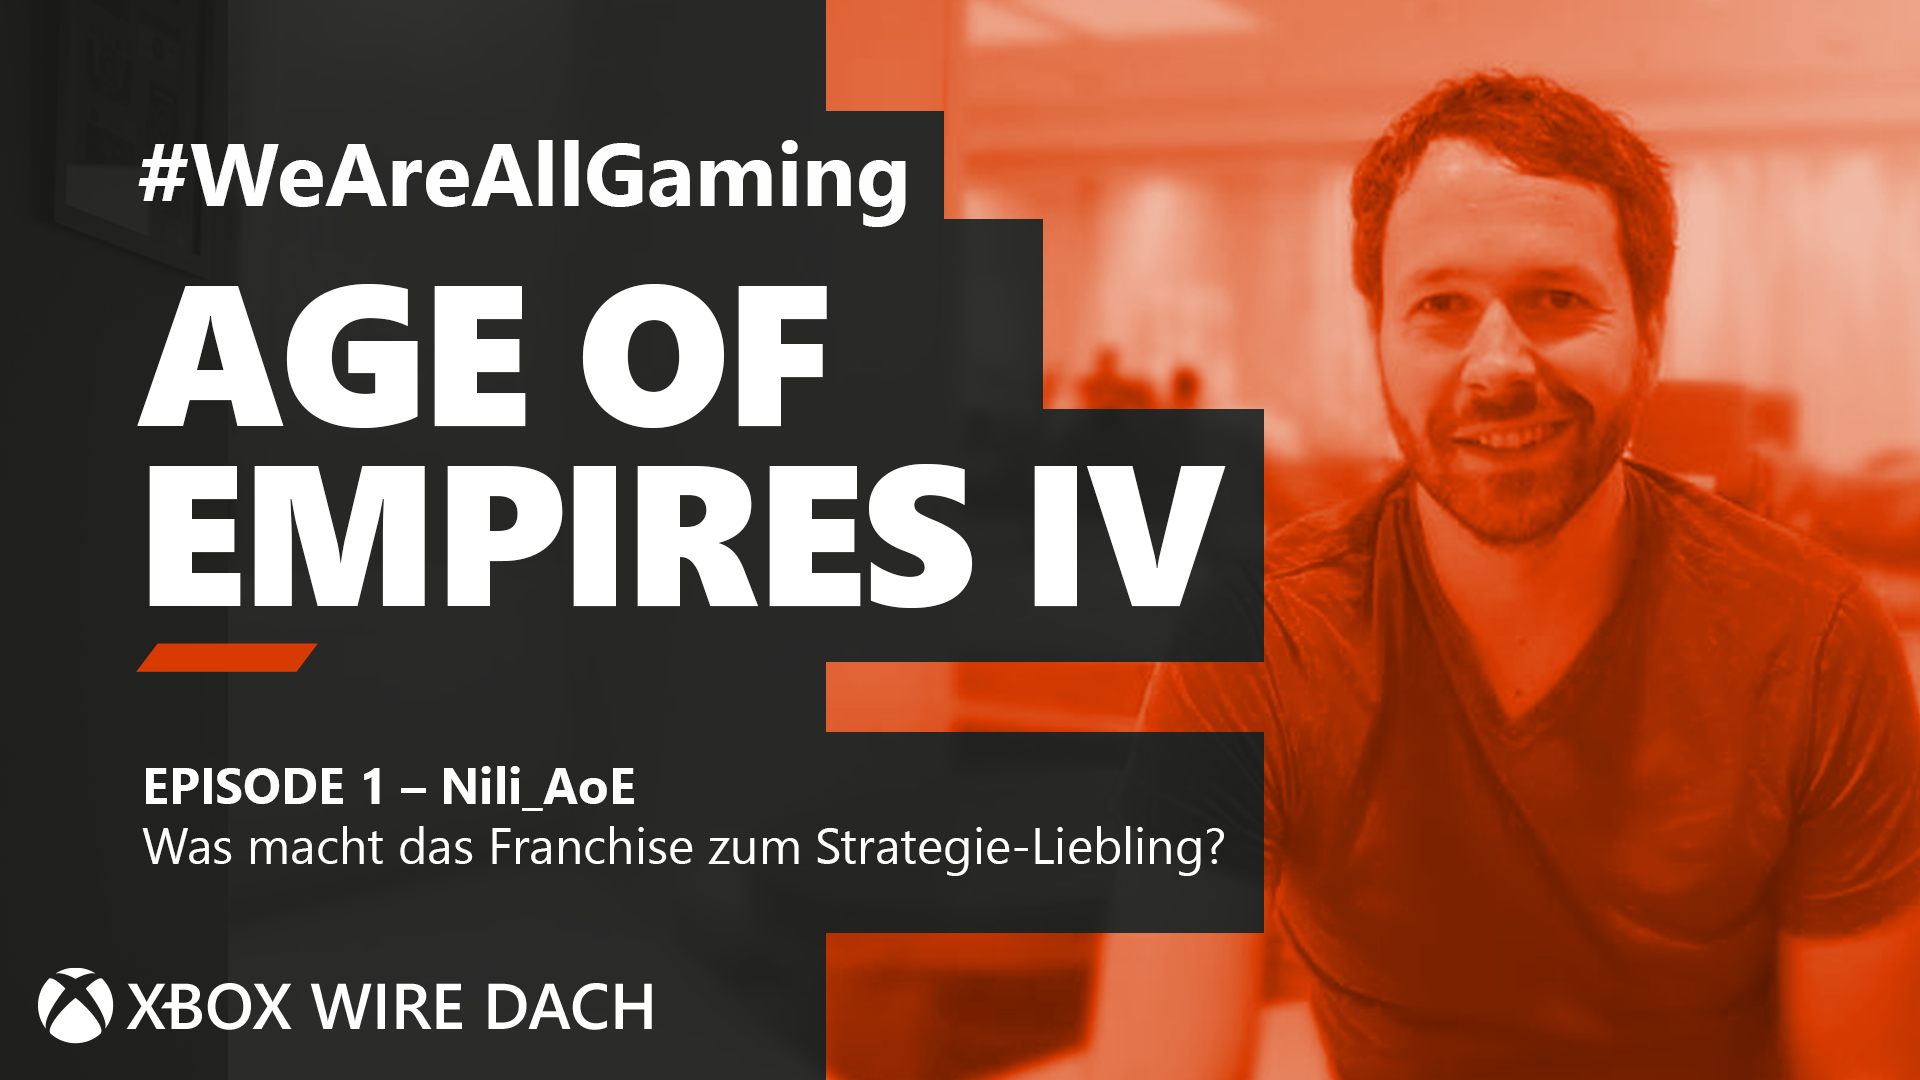 #WeAreAllGaming Age of Empires IV: Streamer Nili_AoE zeigt, was das Franchise zum Strategie-Liebling macht HERO